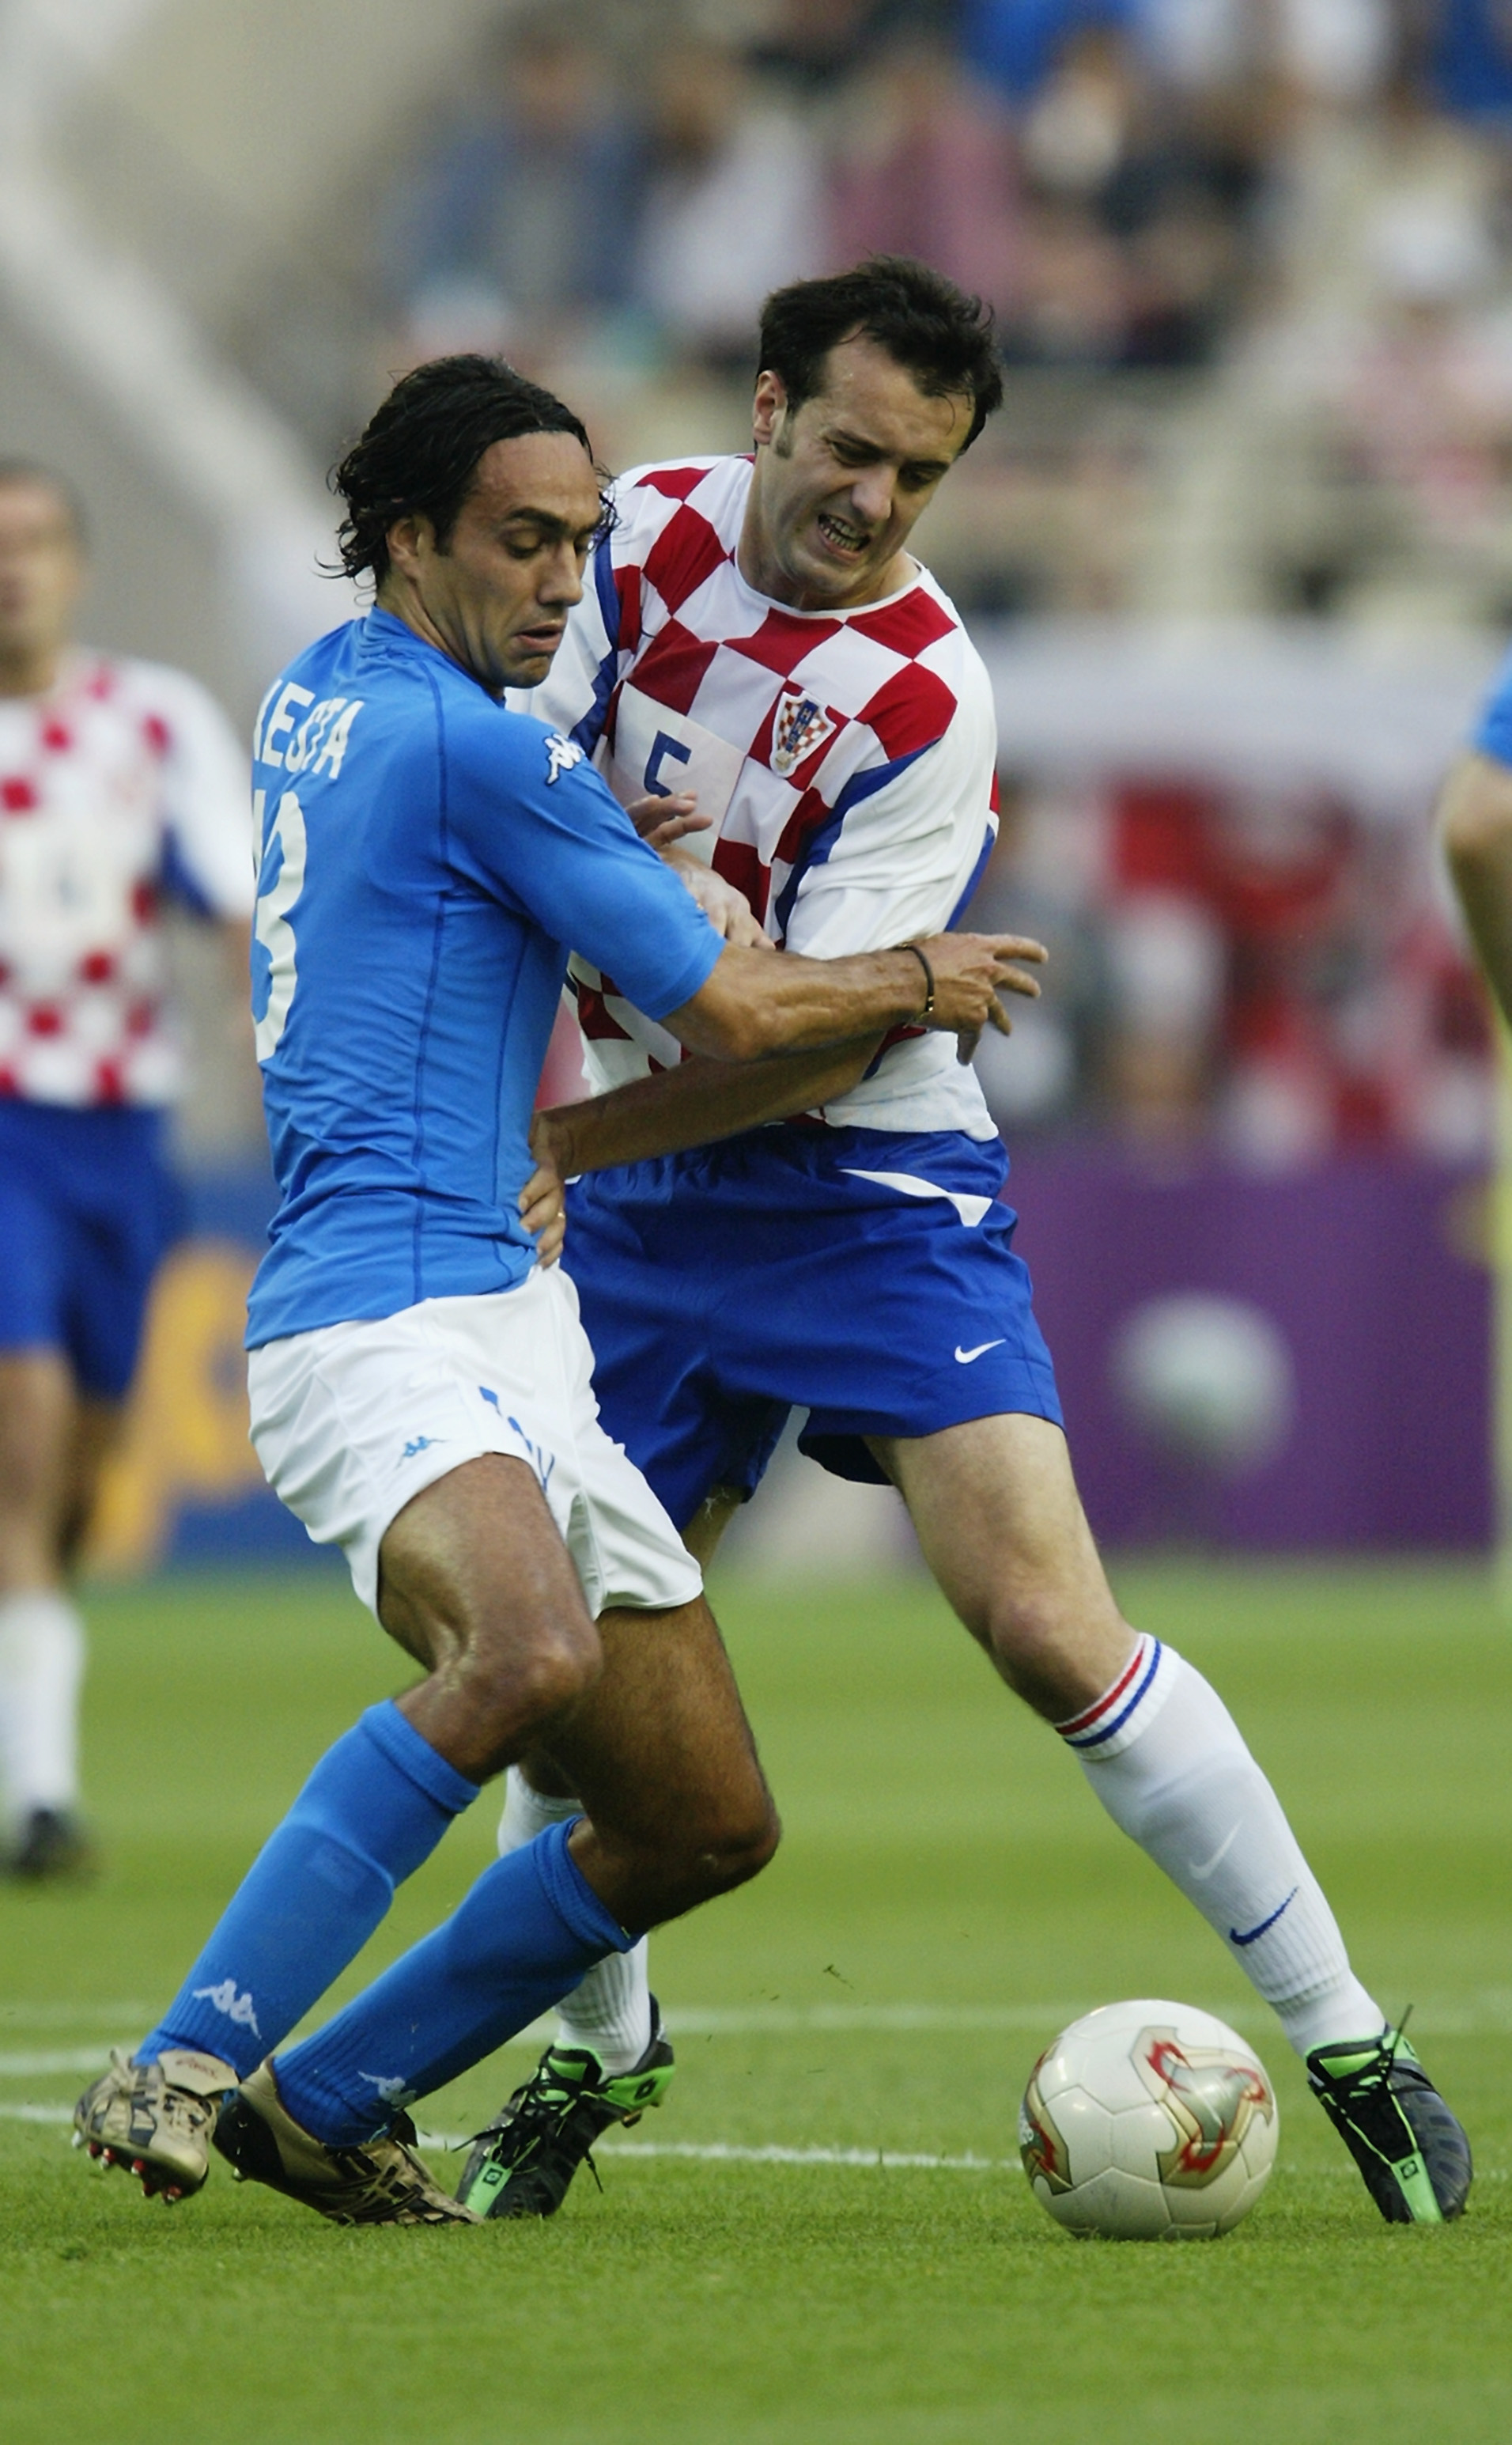 Nesta har deltagit i tre VM för Italien, här ses han under VM 2002.